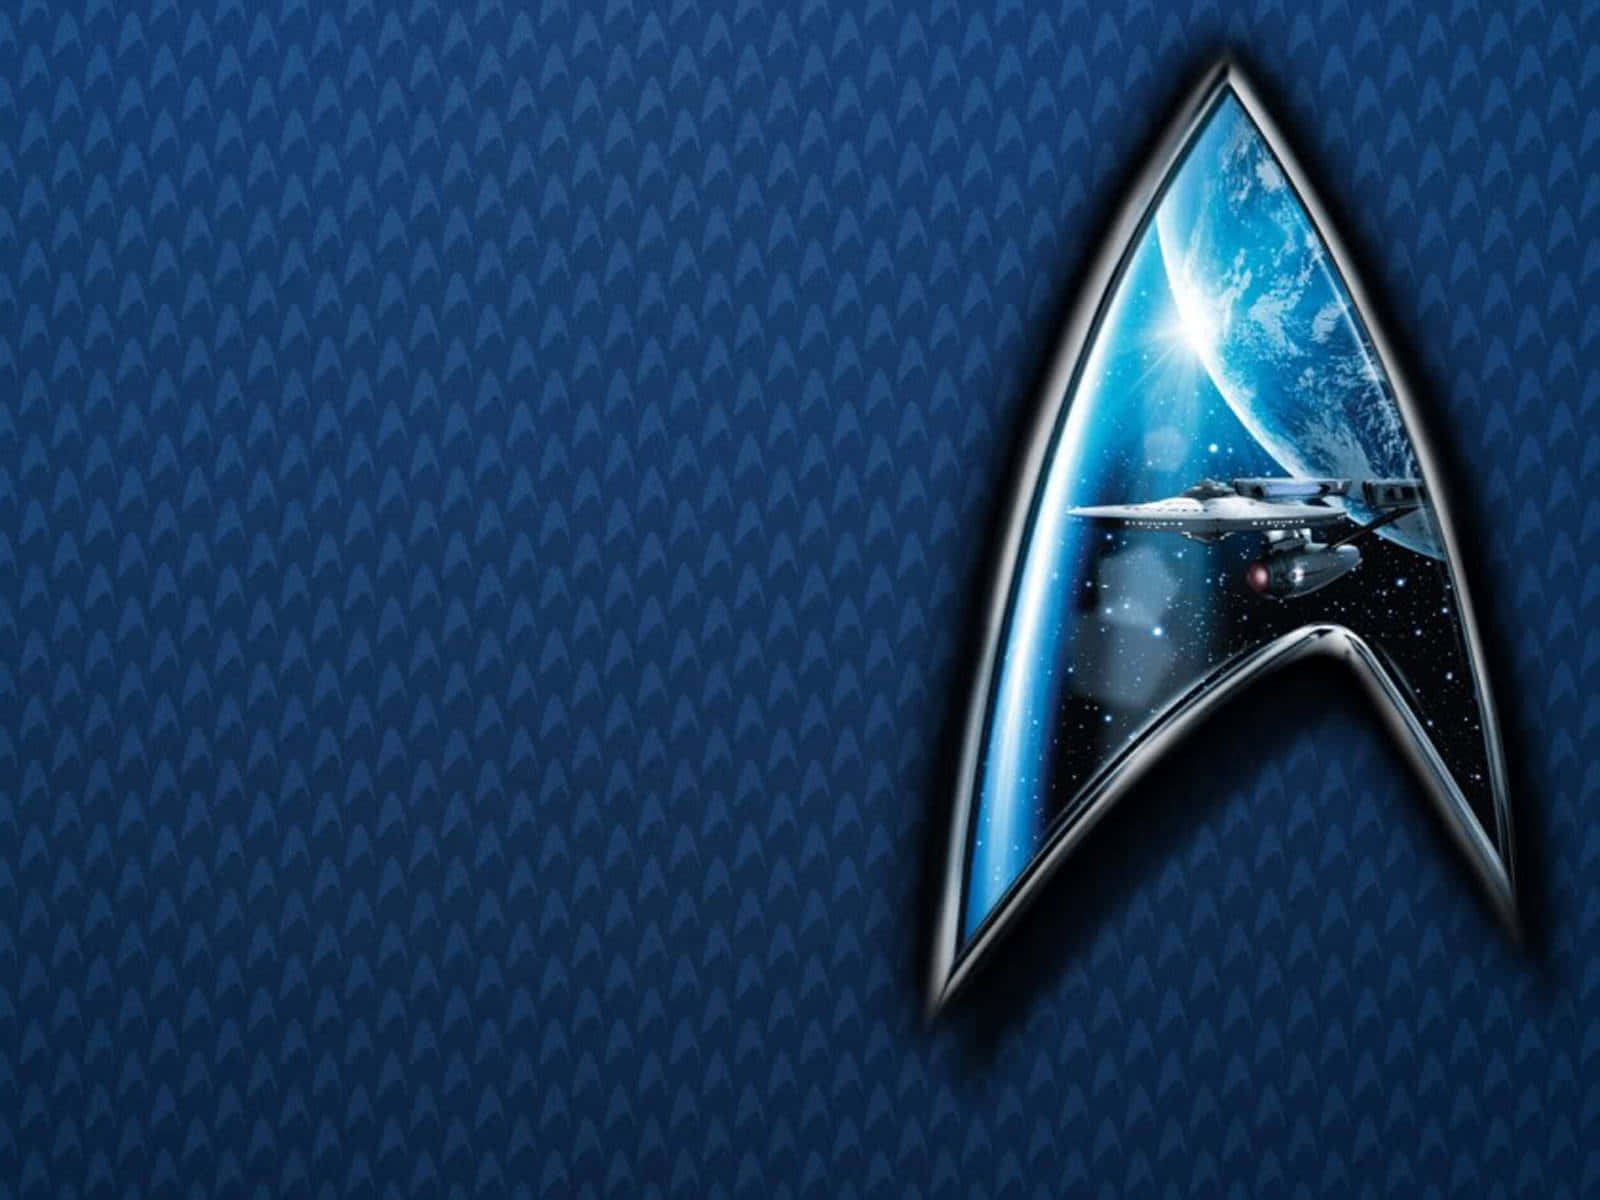 Fondode Pantalla Azul De La Federación Warp De Star Trek Como Fondo De Zoom.